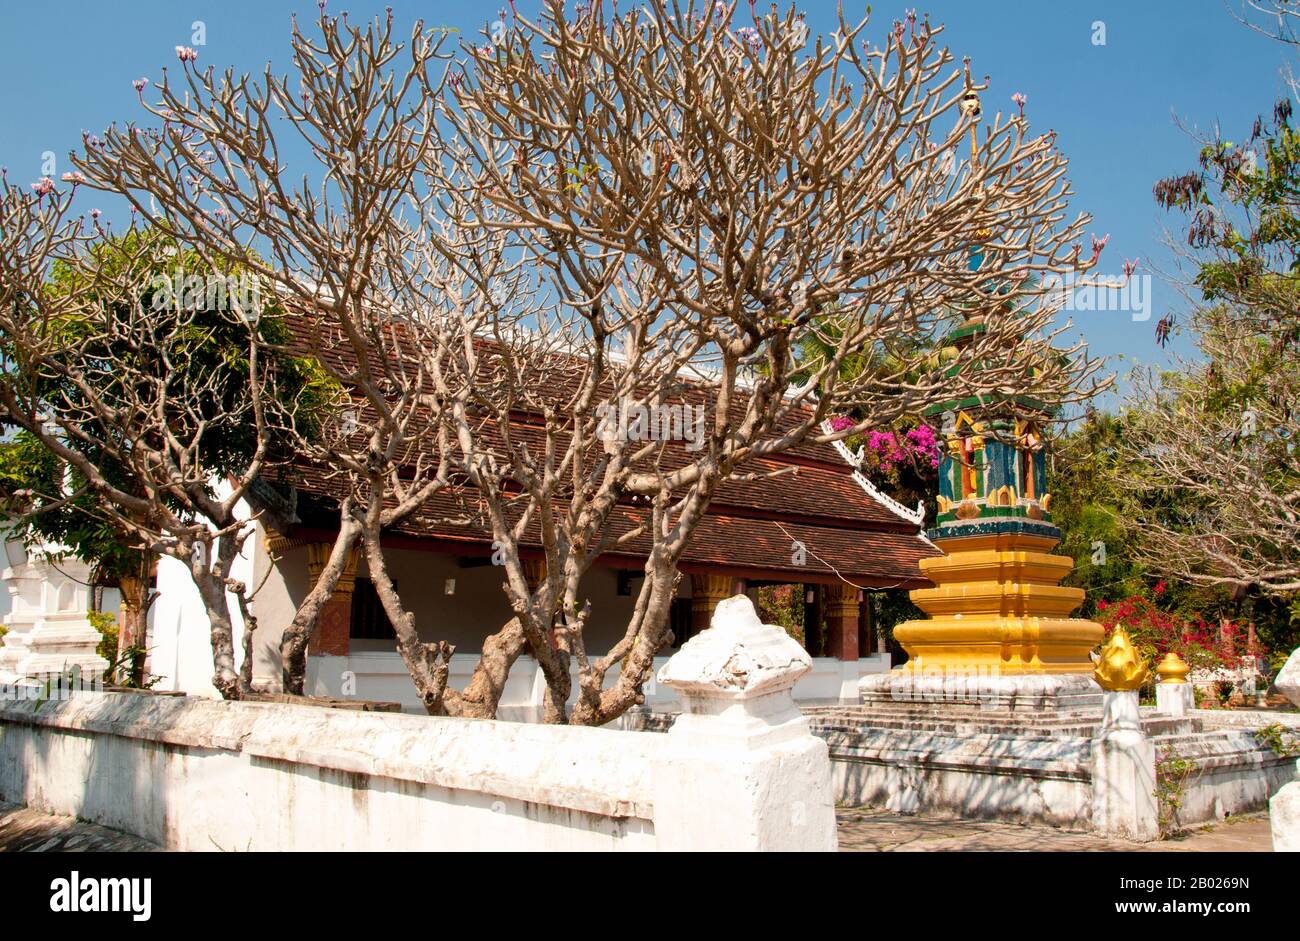 Luang Prabang war früher die Hauptstadt eines gleichnamigen Königreichs. Bis zur kommunistischen Machtübernahme 1975 war es die königliche Hauptstadt und Regierungssitz des Königreichs Laos. Die Stadt gehört heute zum UNESCO-Weltkulturerbe. Stockfoto